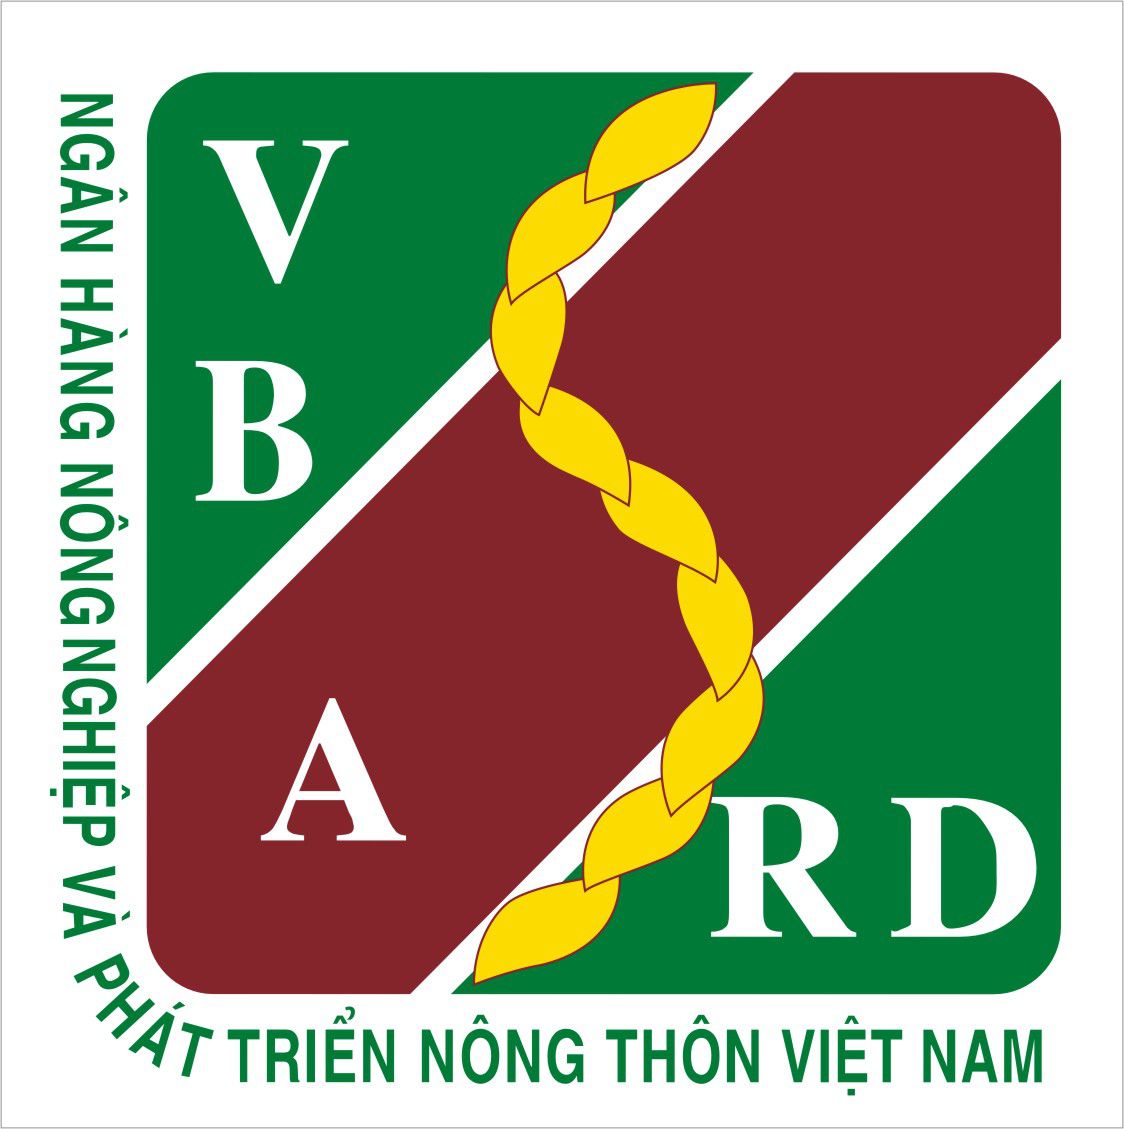  - In Rồng Việt Nam - Công Ty TNHH Văn Hóa Rồng Việt Nam